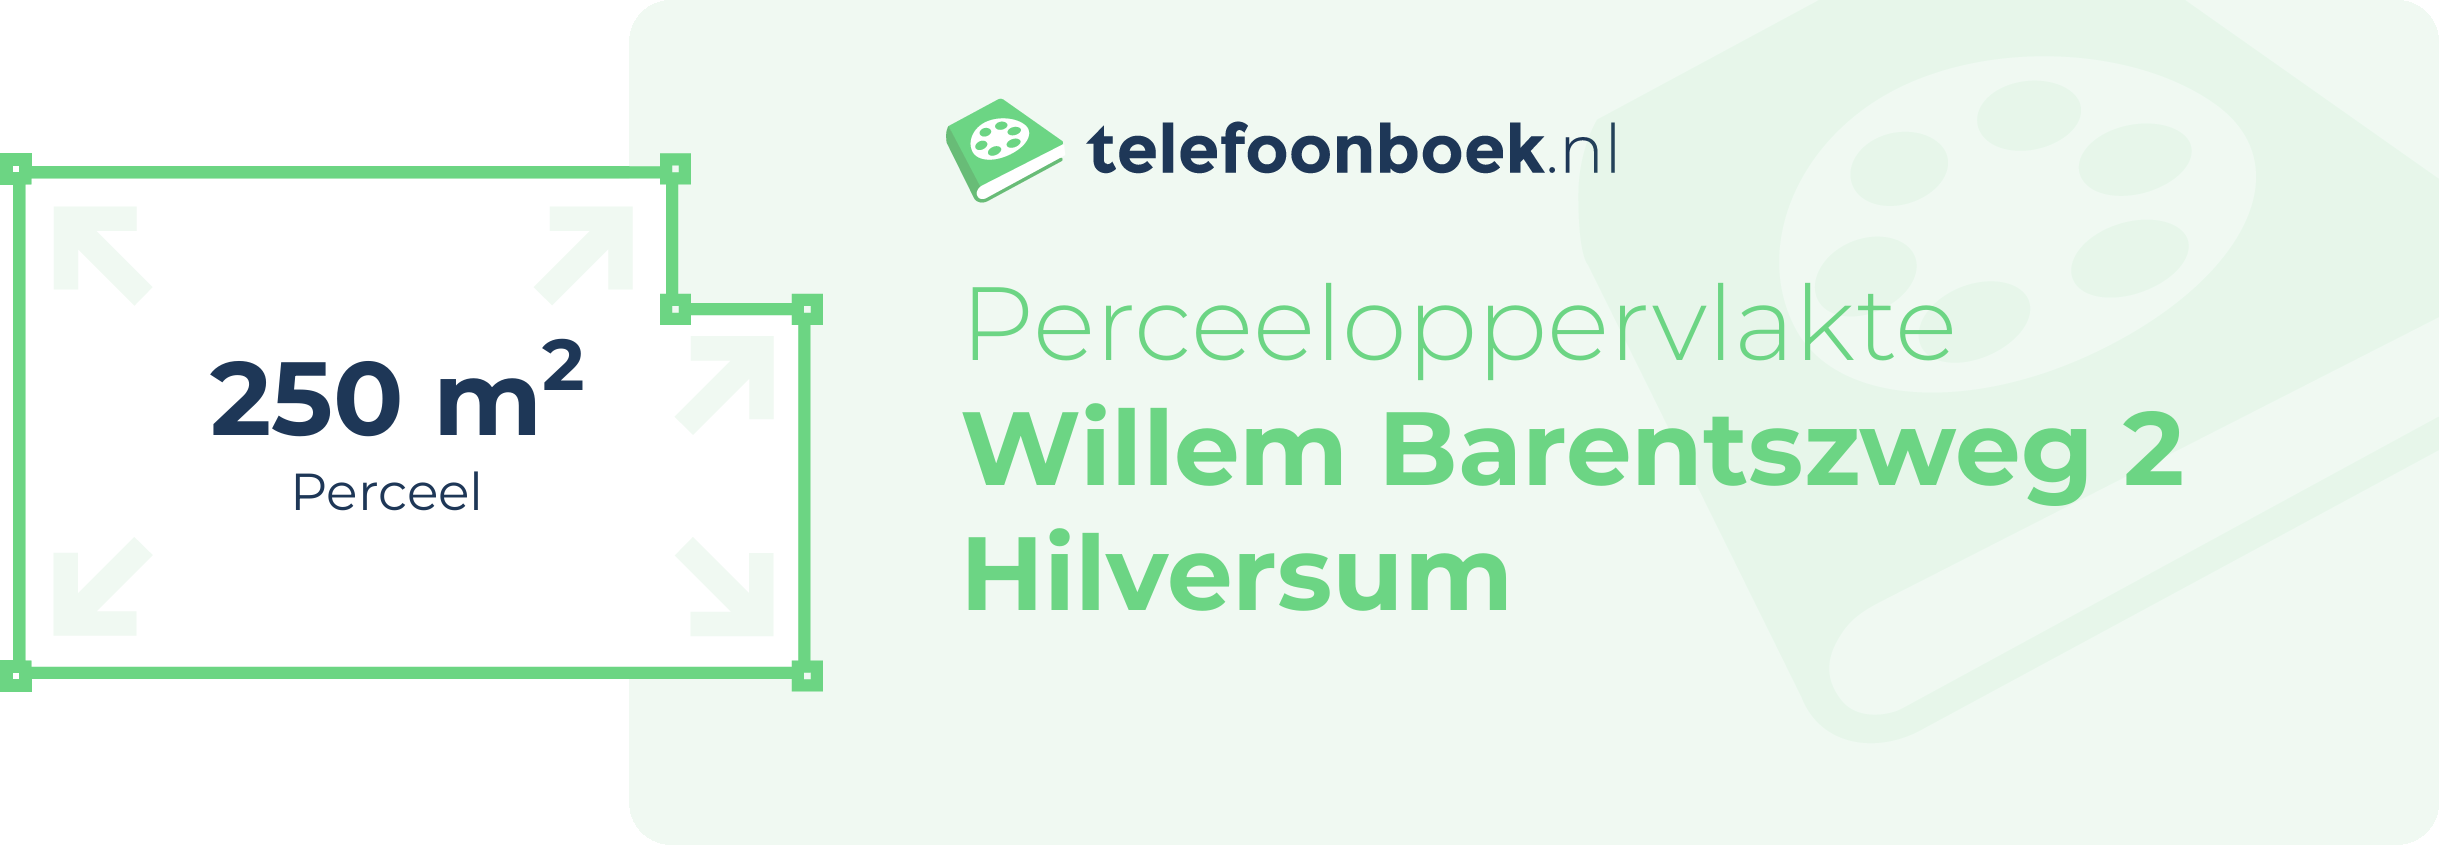 Perceeloppervlakte Willem Barentszweg 2 Hilversum